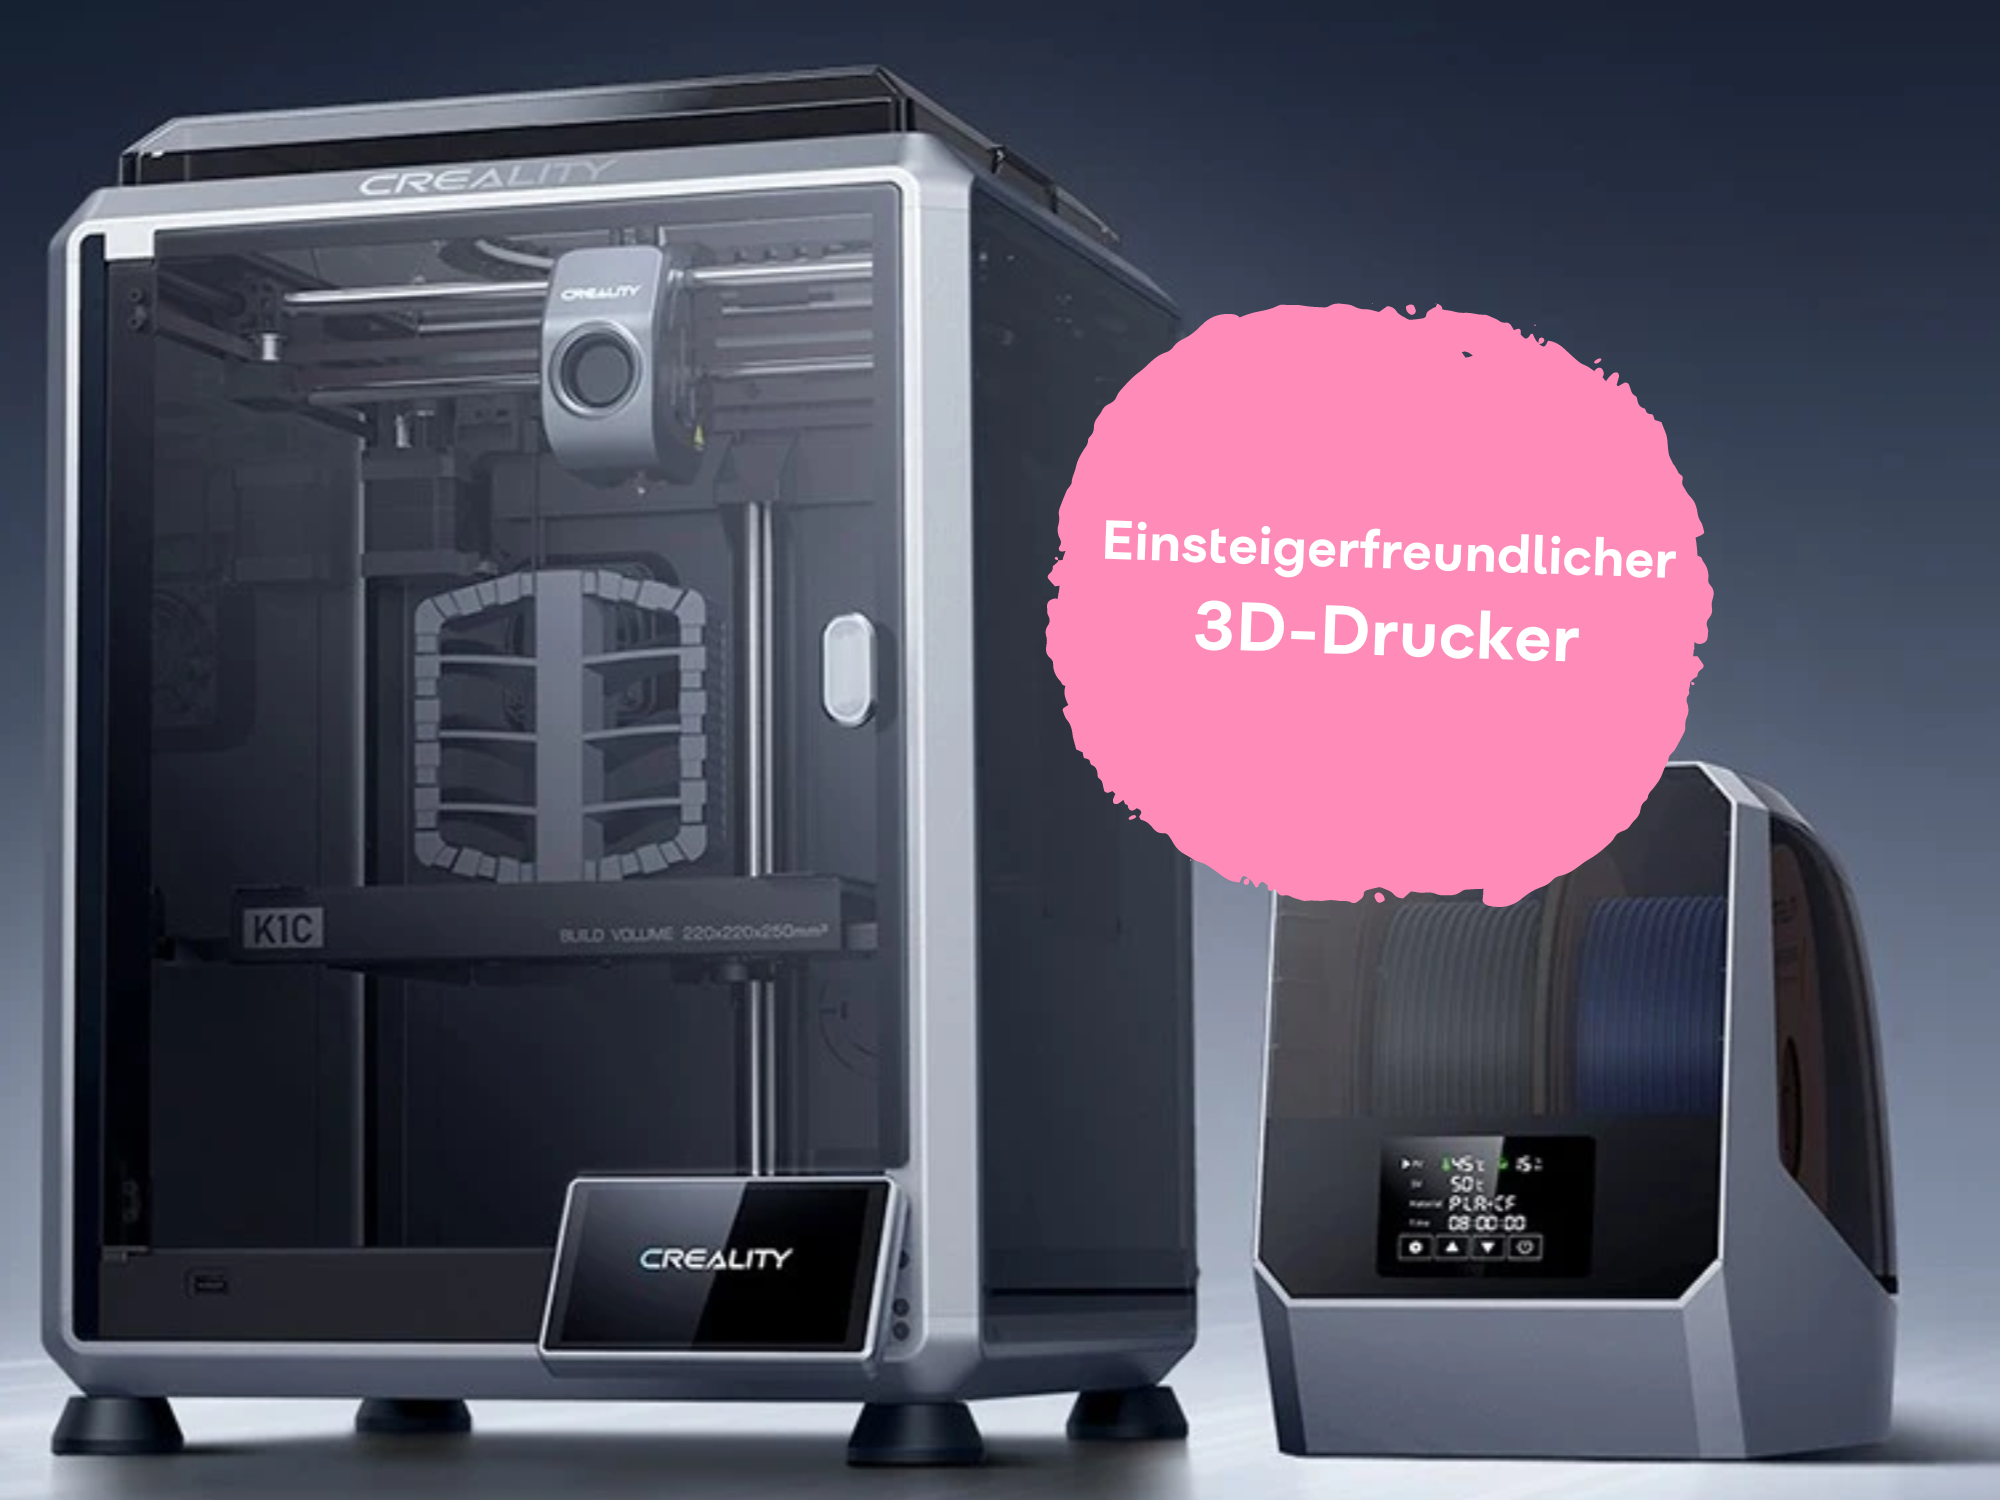 #3D-Drucker für Einsteiger: Hier gibt’s die coole Technik günstiger